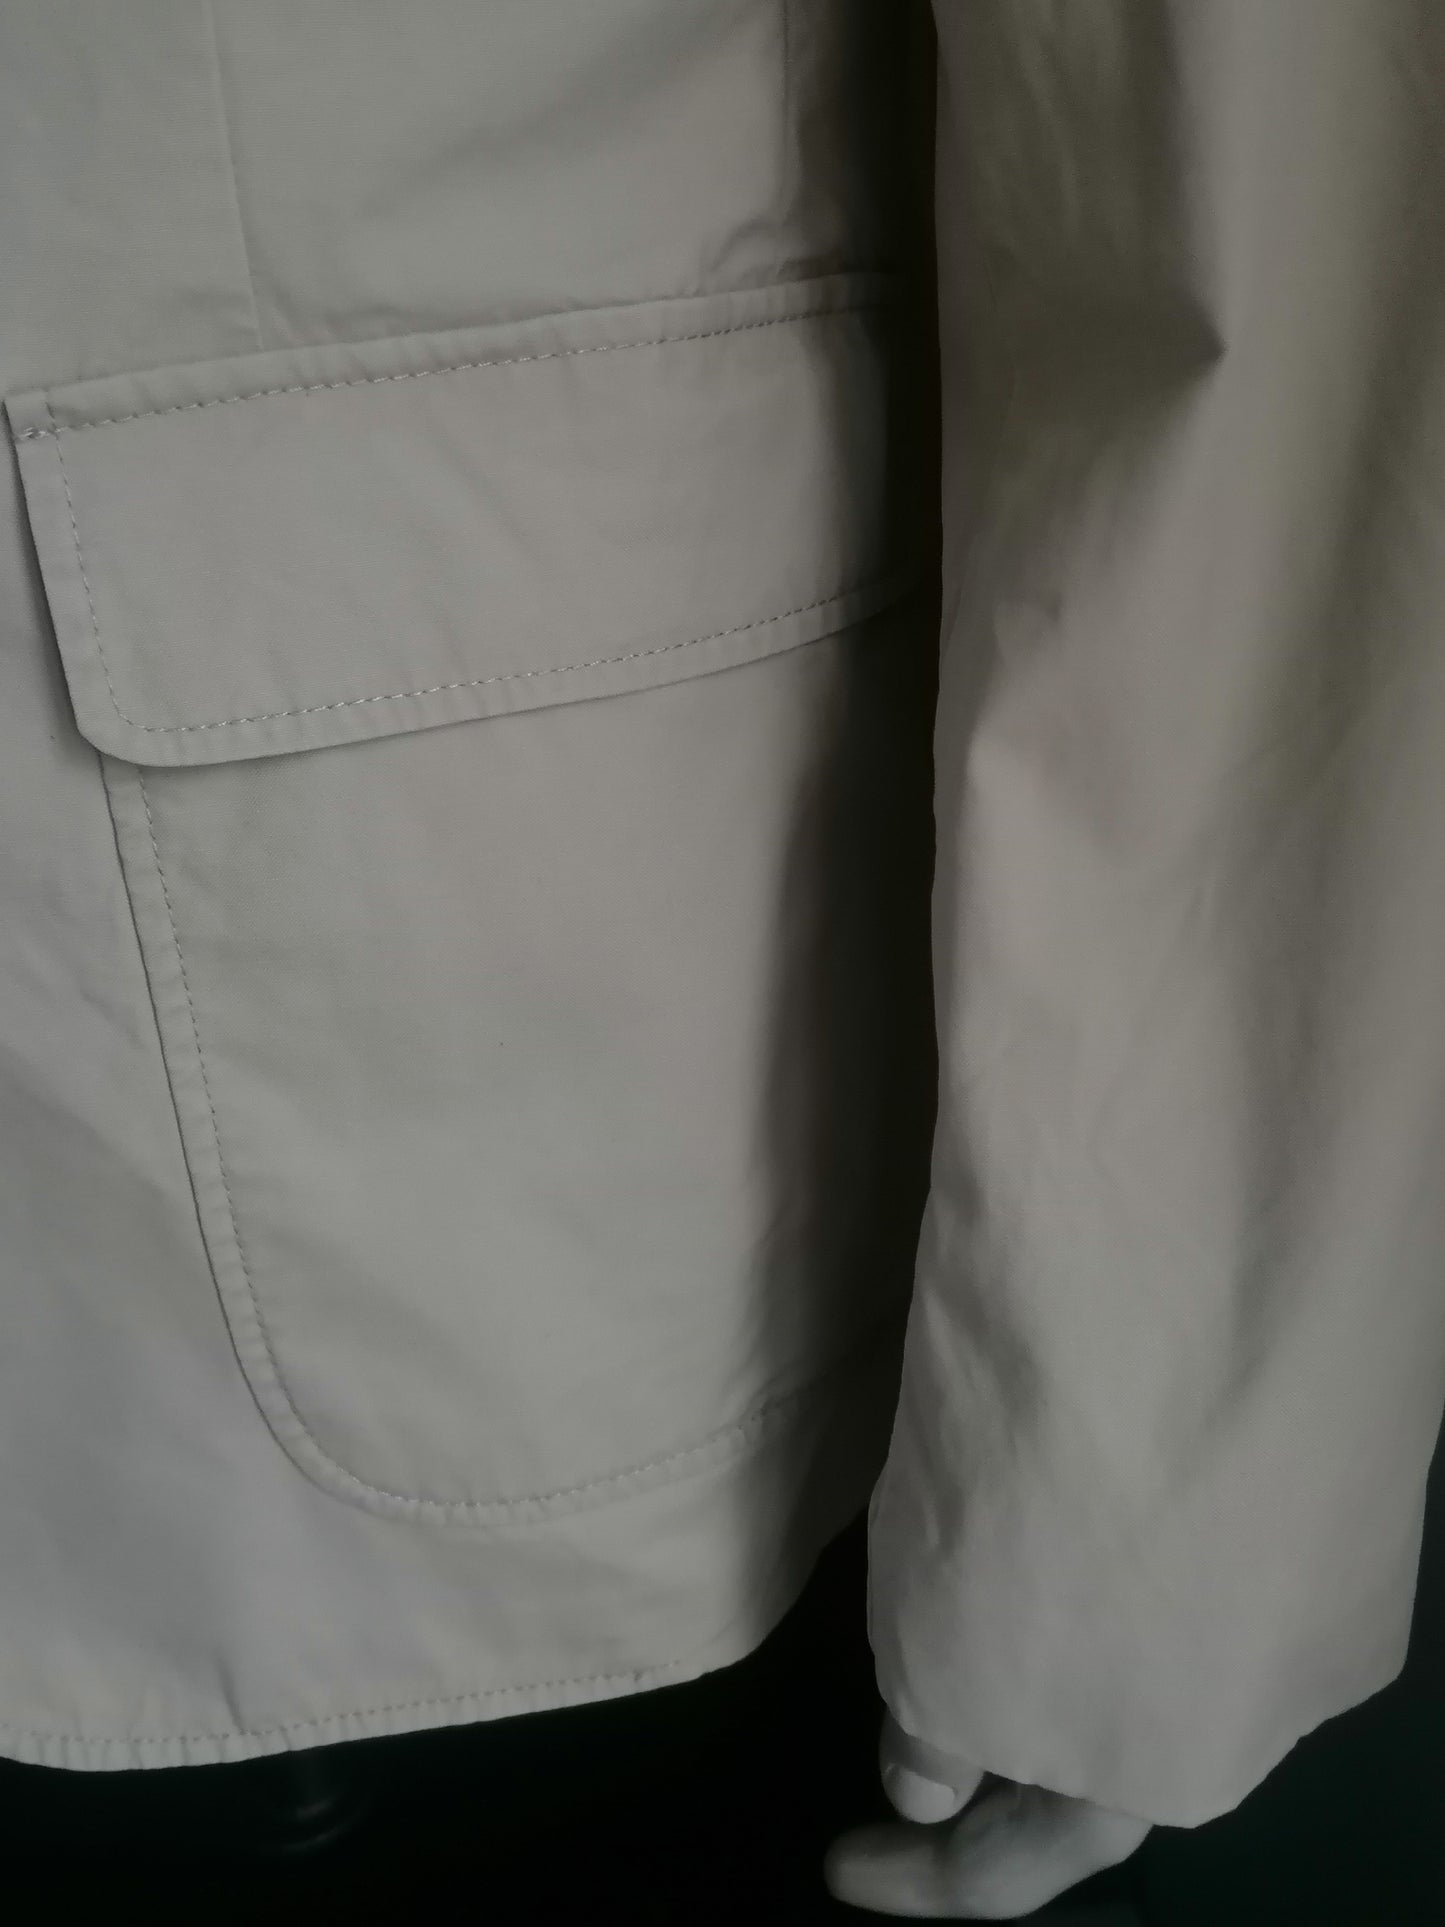 Tommy Hilfiger summer jacket. Beige colored. Size 54 / L.